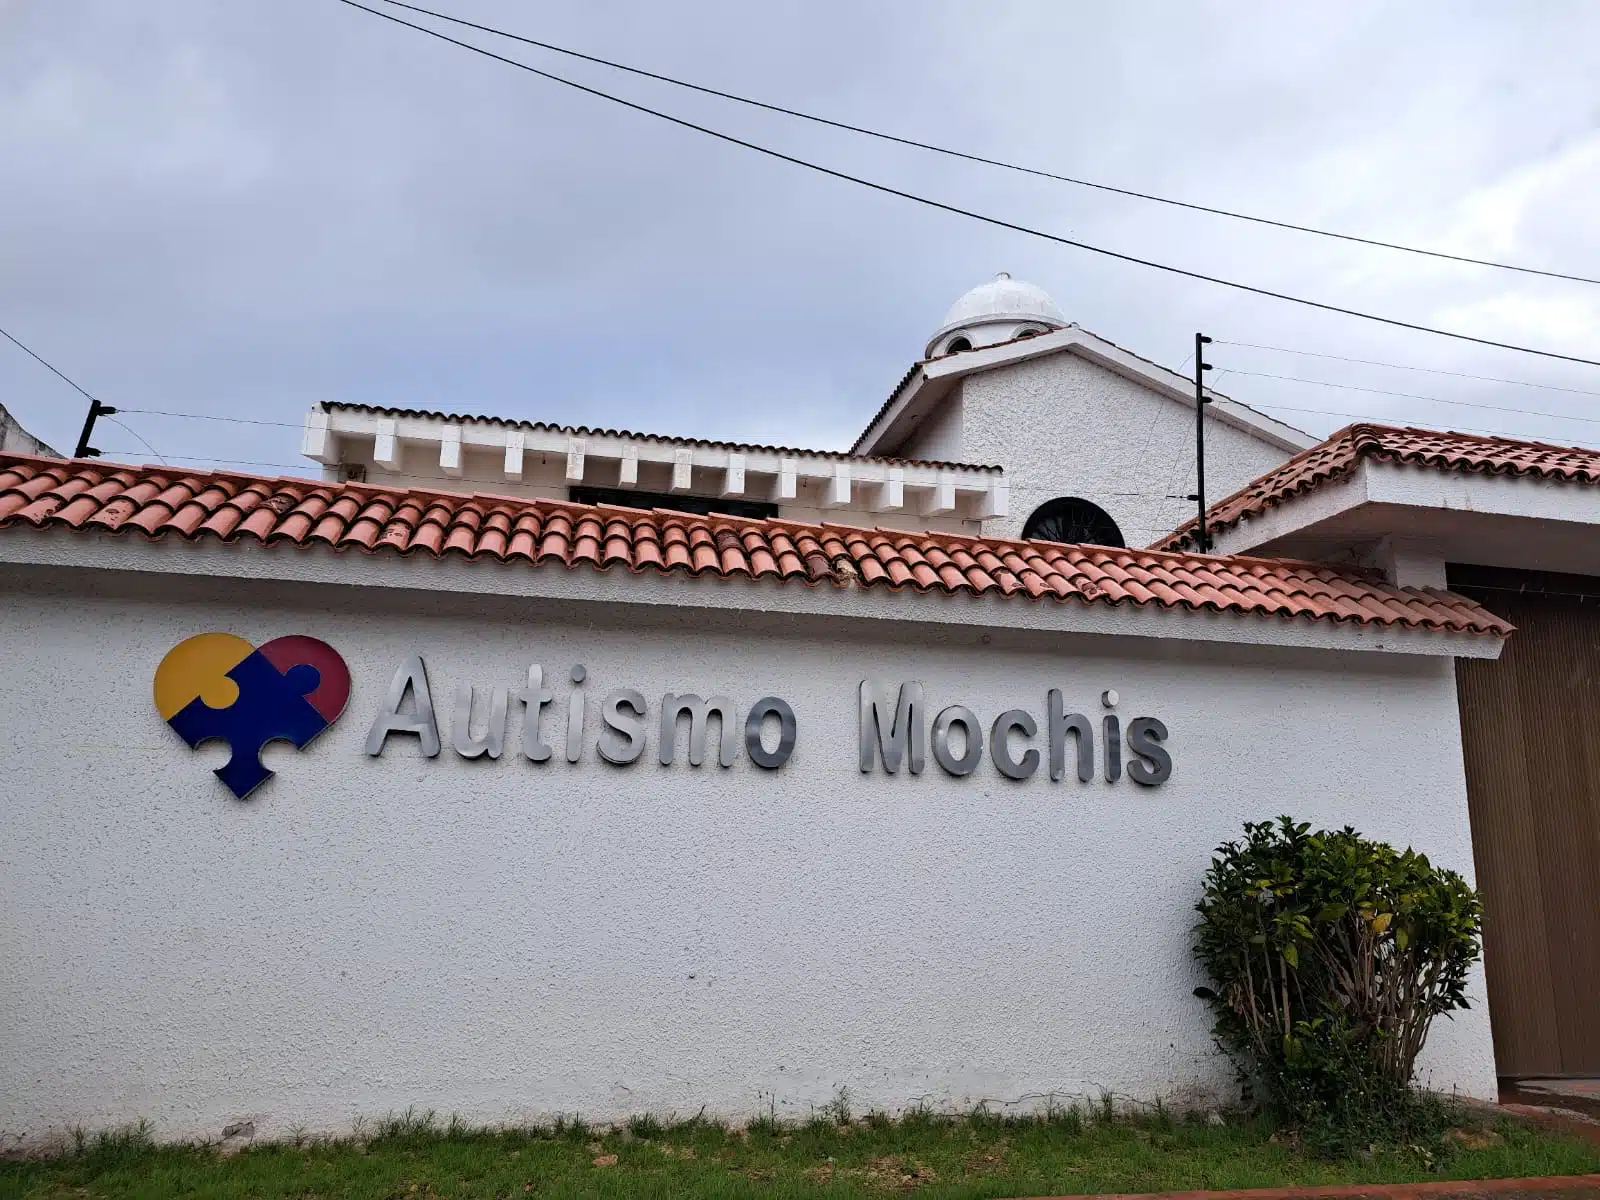 Casa que alberga la institución Autismo Mochis